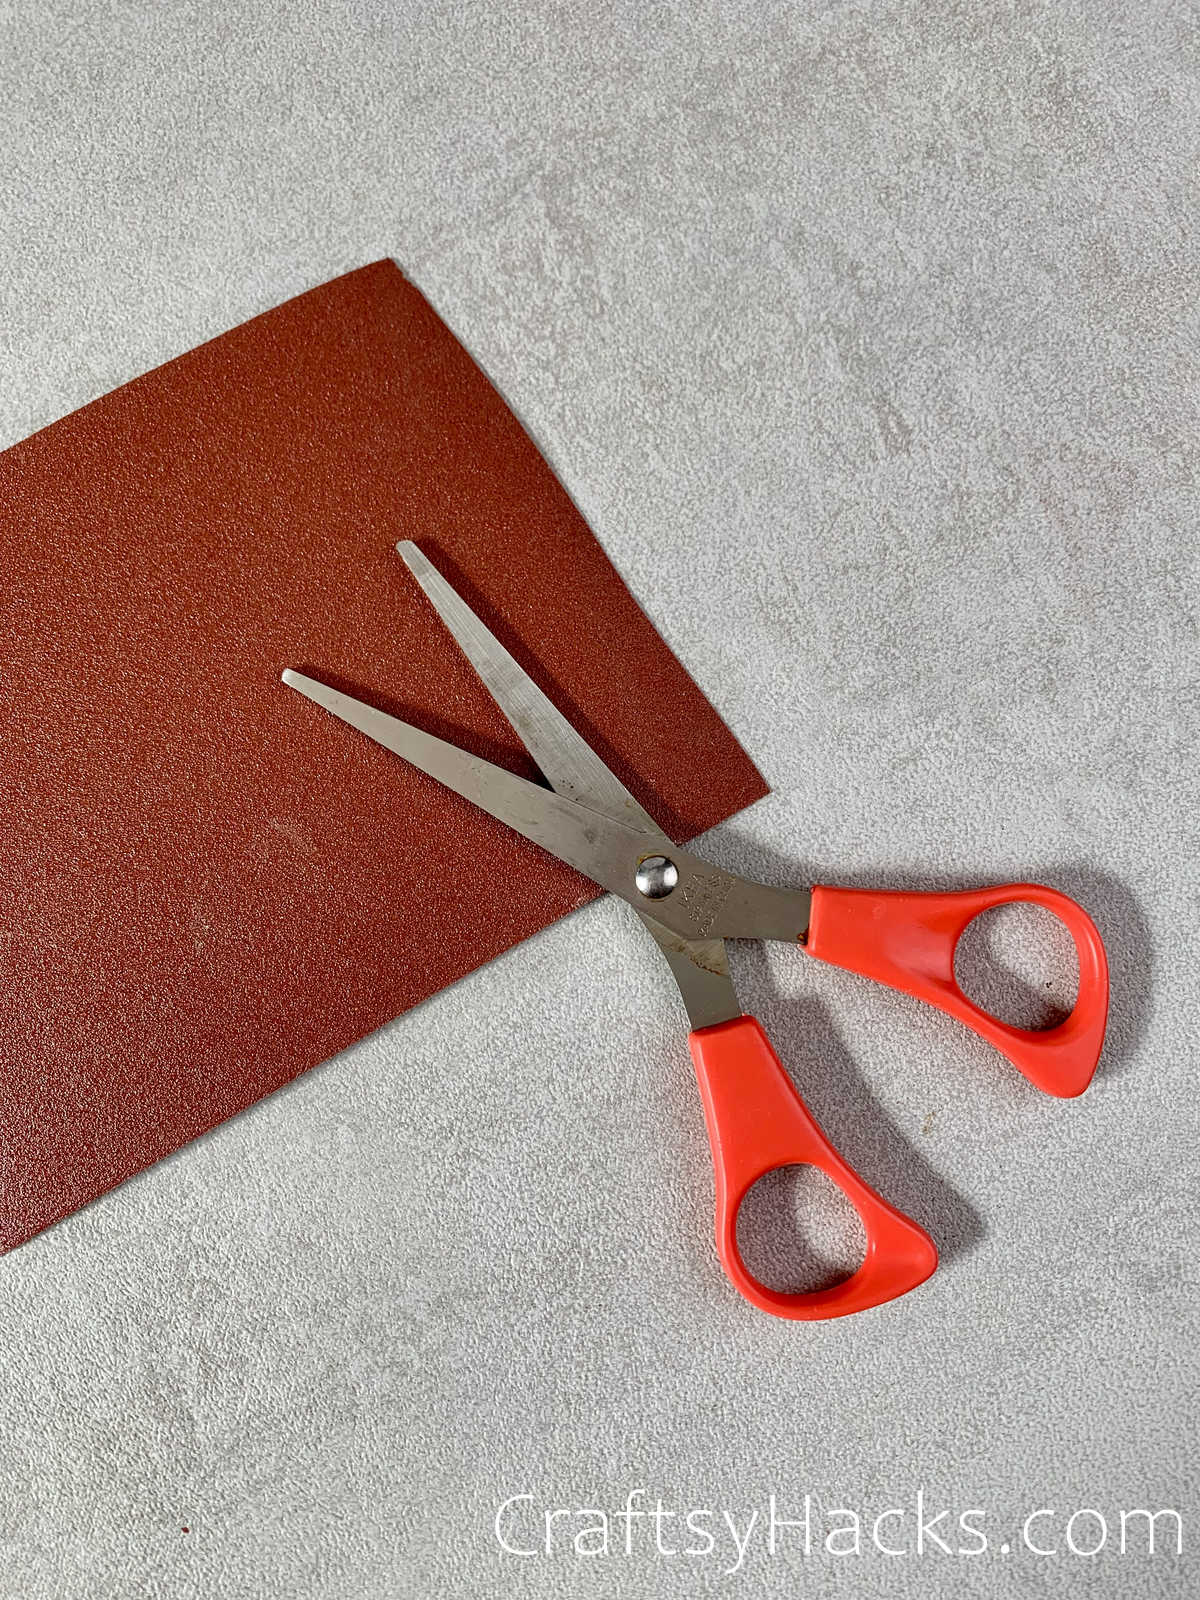 sandpaper to sharpen scissors